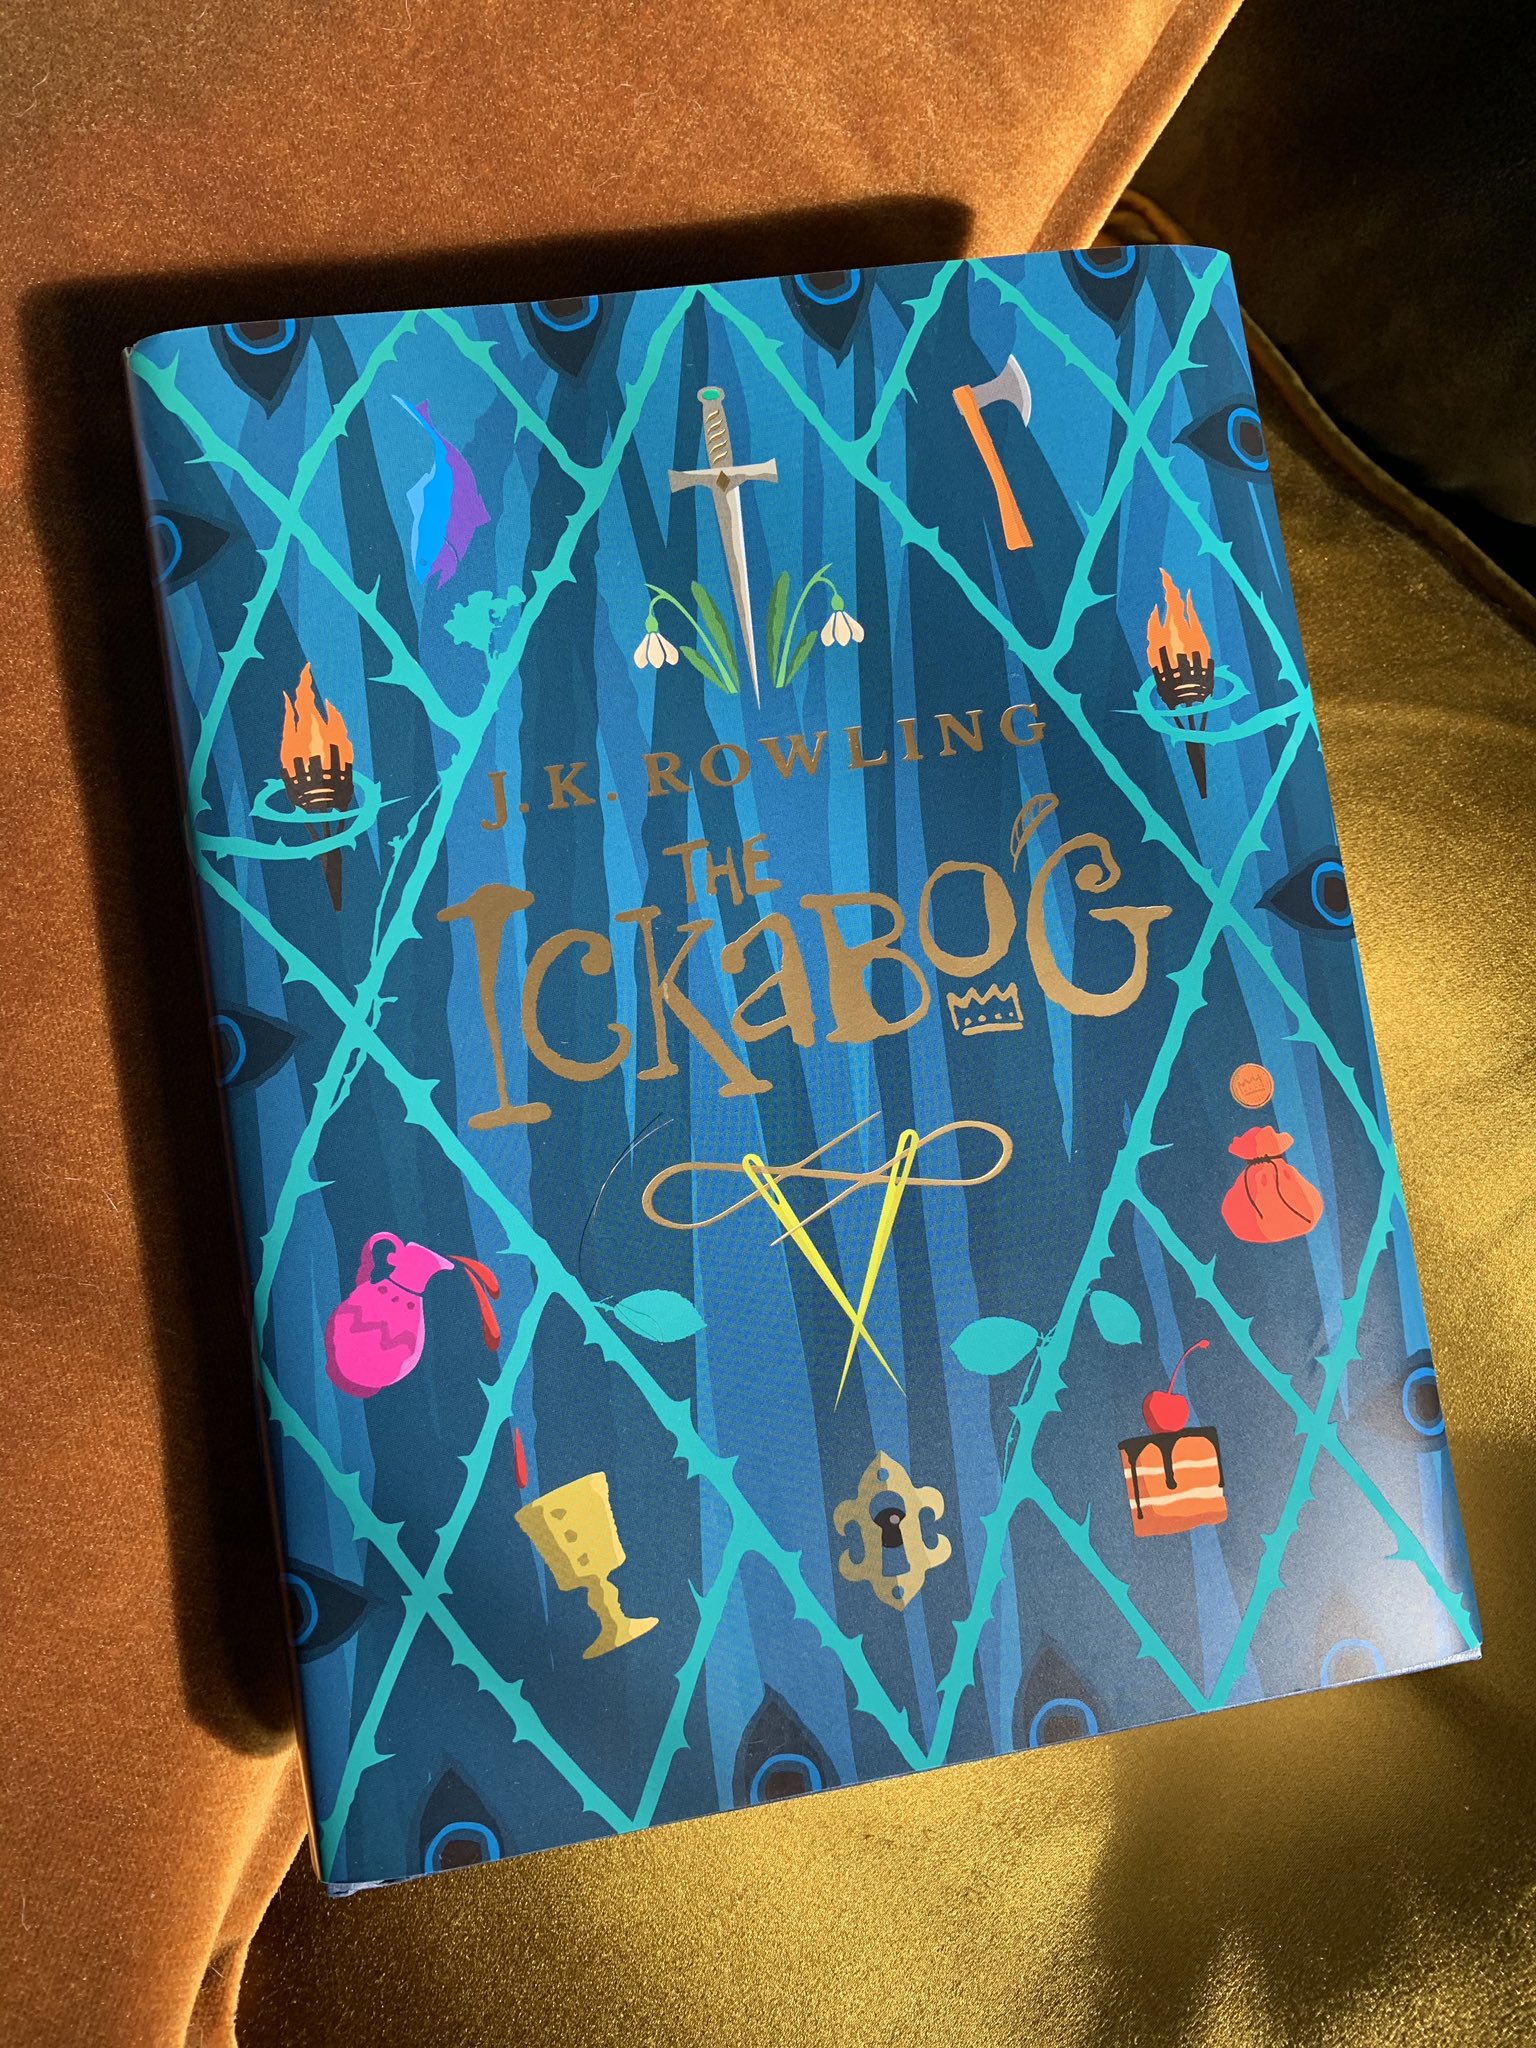 The Ickabog", J.K. Rowling svela la copertina del suo ultimo libro -  Giornale di Sicilia